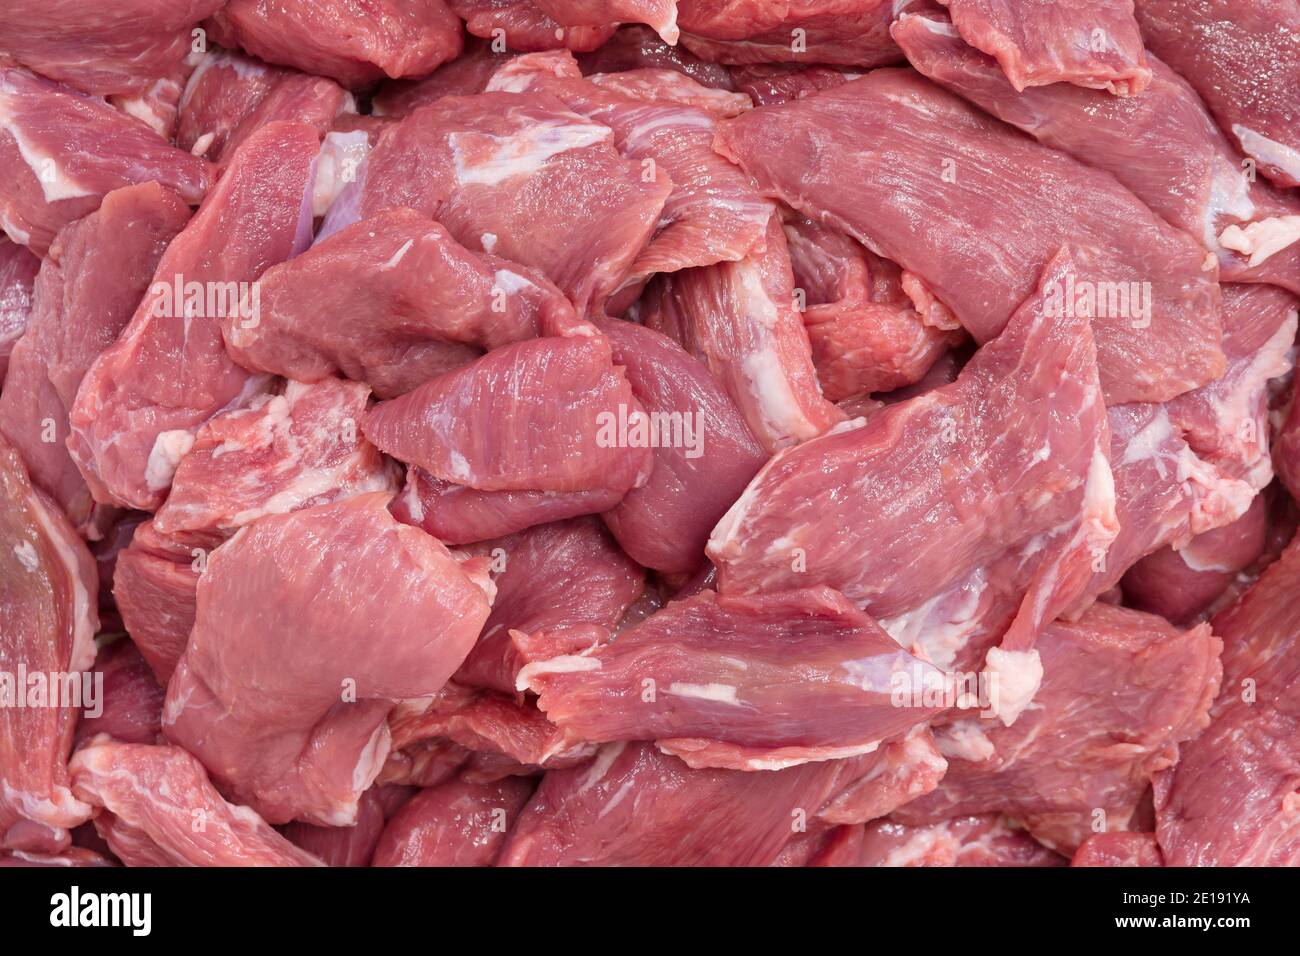 Raw lamb shoulder fillets Stock Photo